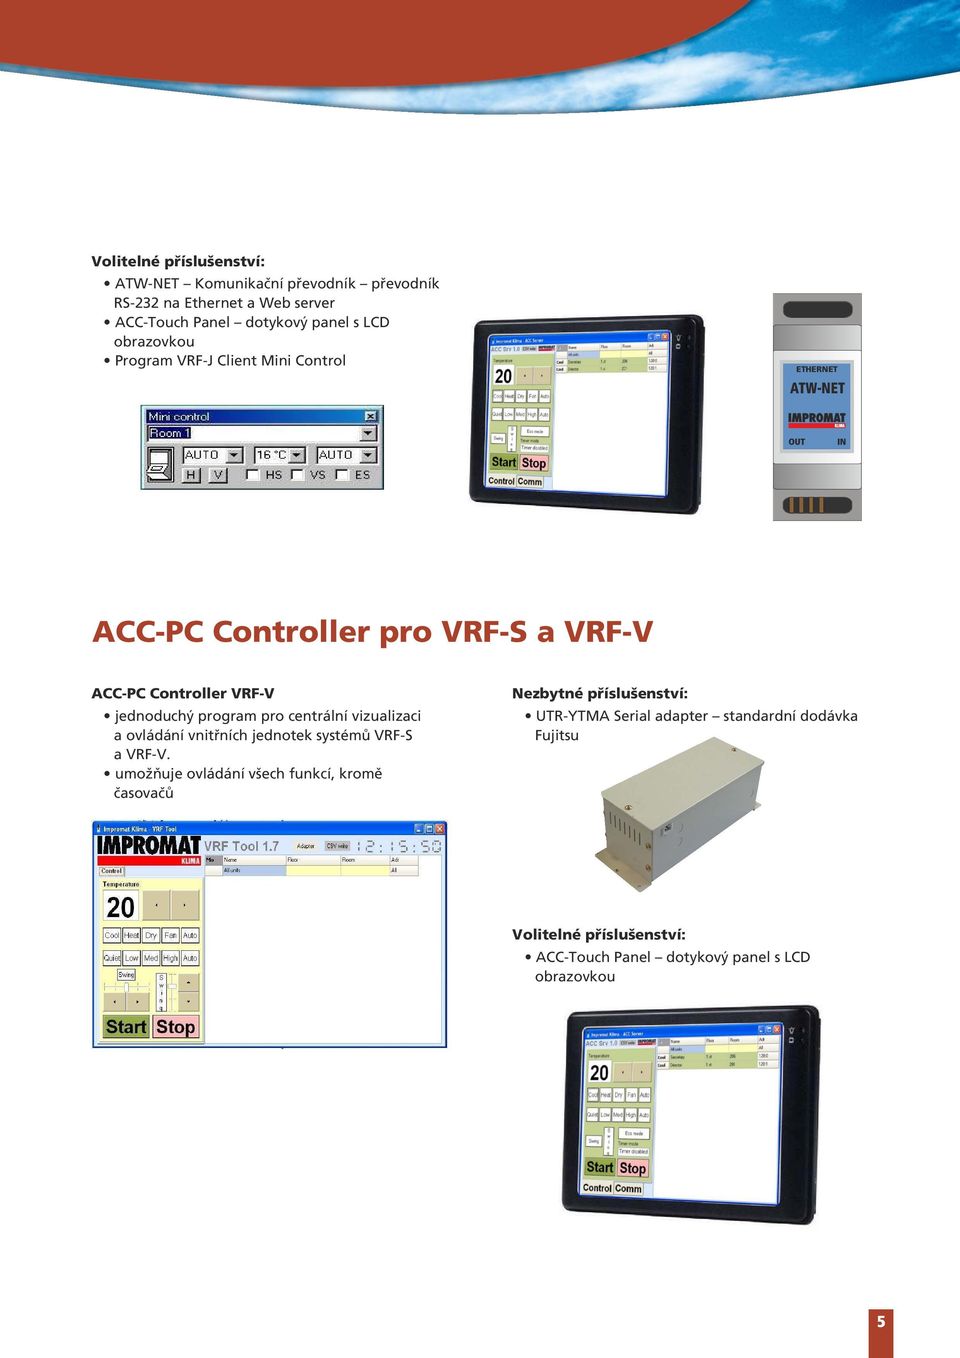 program pro centrální vizualizaci a ovládání vnitřních jednotek systémů VRF-S a VRF-V.